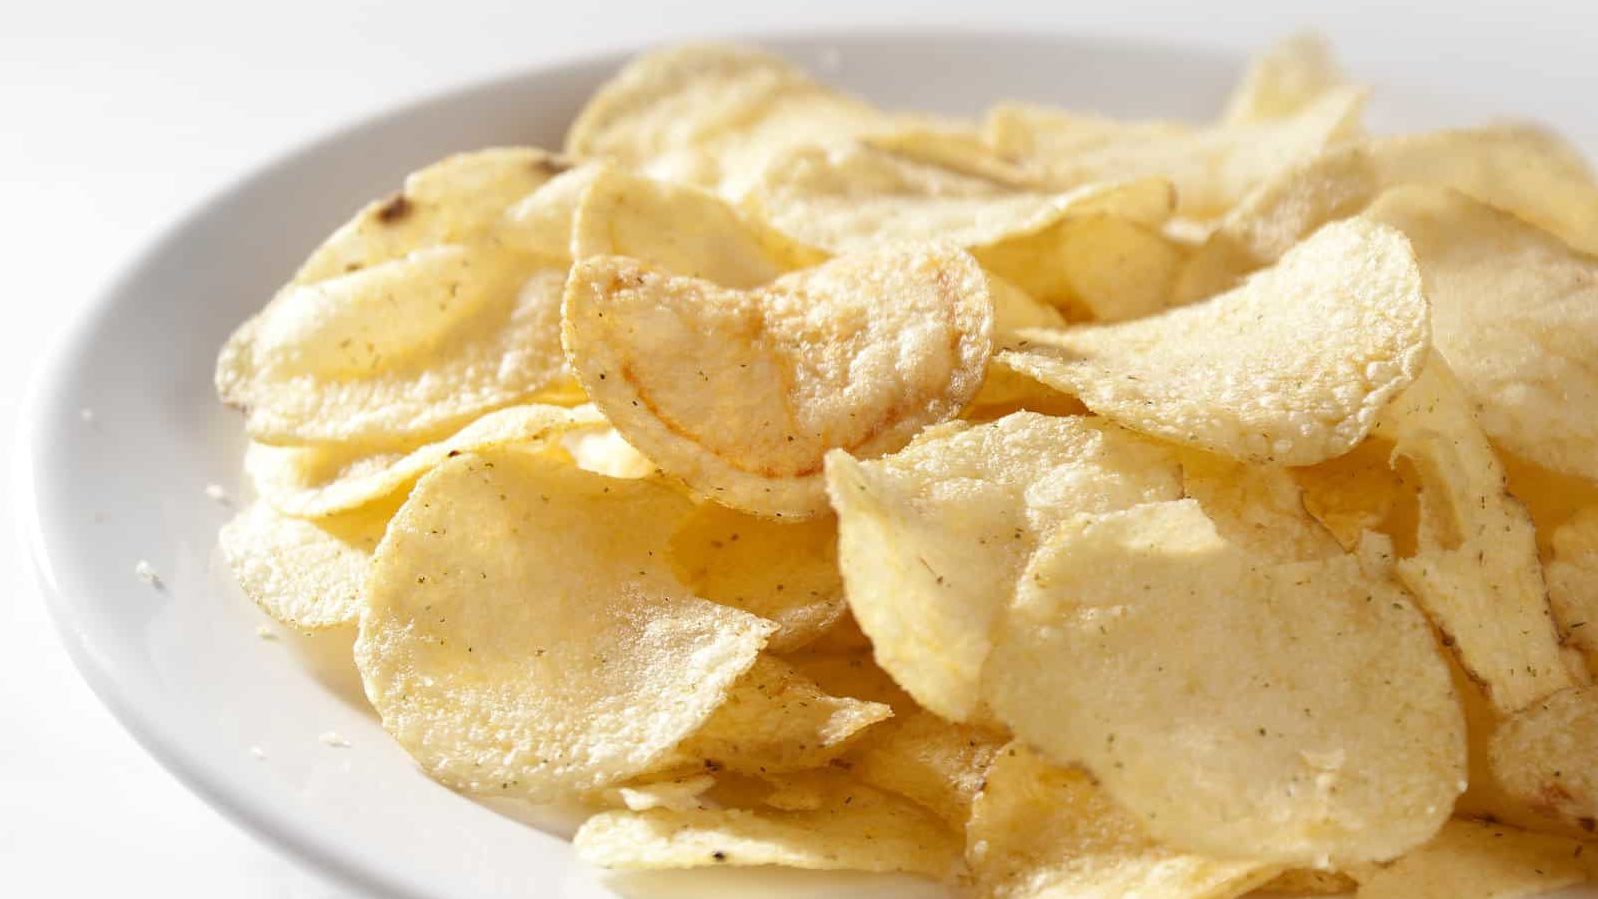 Des chips dans une assiette